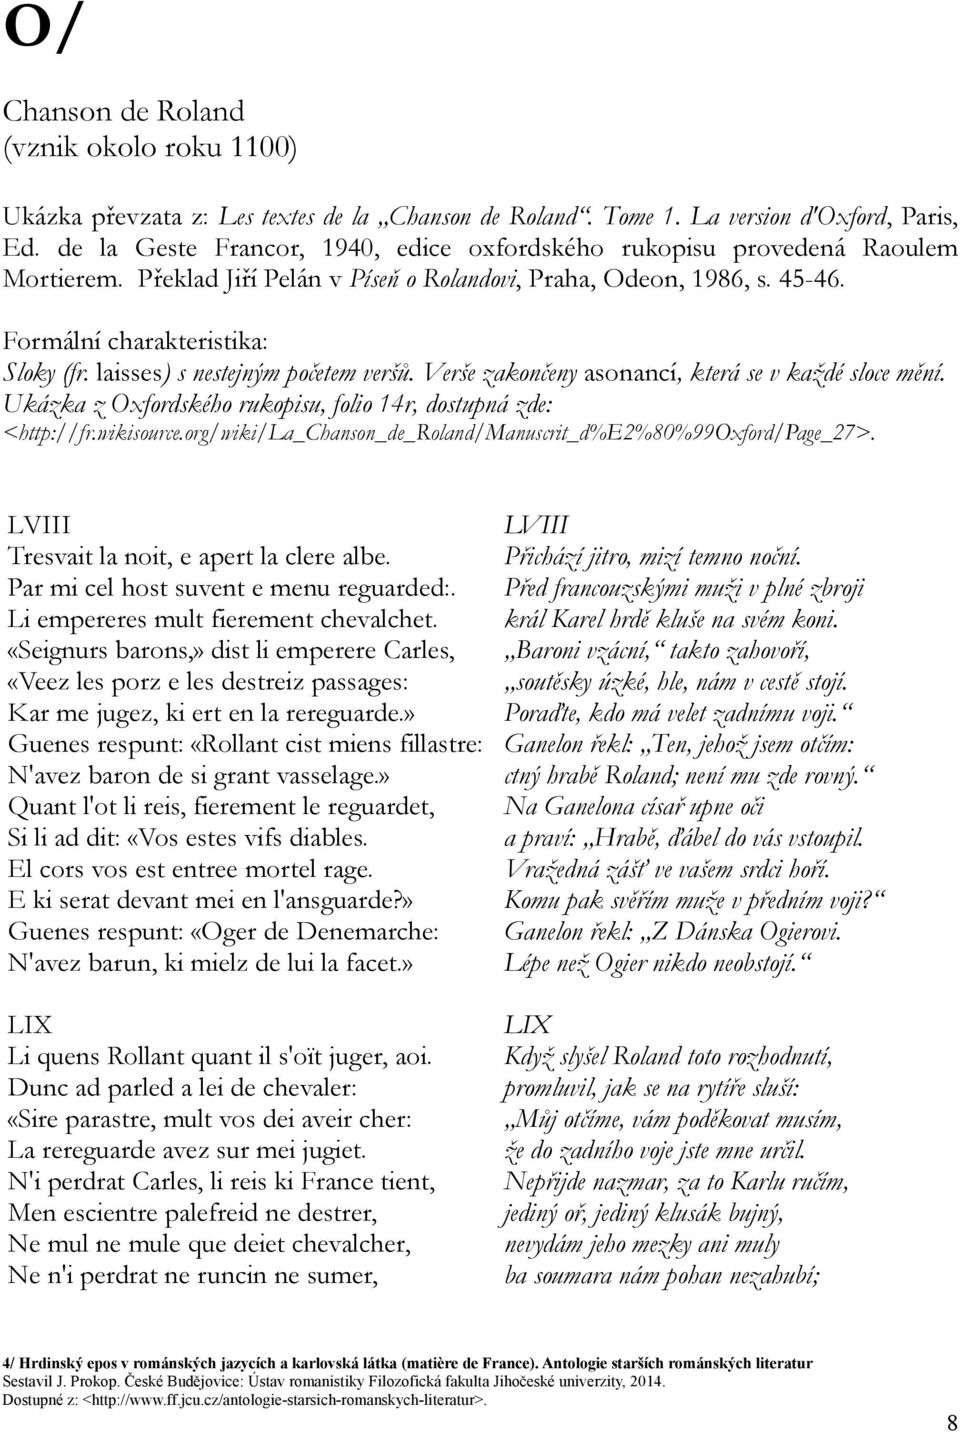 laisses) s nestejným početem veršů. Verše zakončeny asonancí, která se v každé sloce mění. Ukázka z Oxfordského rukopisu, folio 14r, dostupná zde: <http://fr.wikisource.